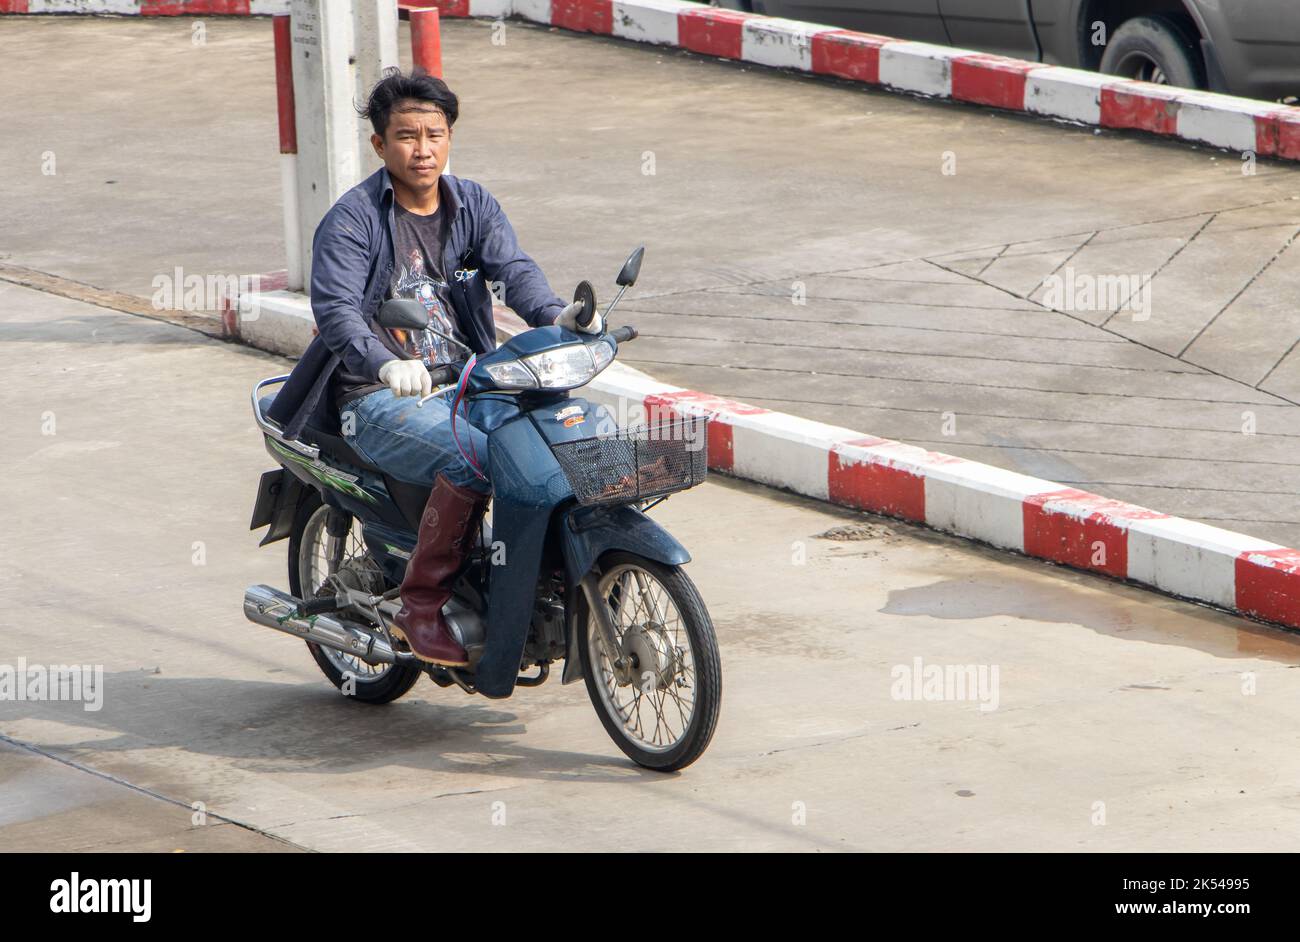 SAMUT PRAKAN, THAILAND, SEP 23 2022, A man  rides a motorcycle at the street Stock Photo